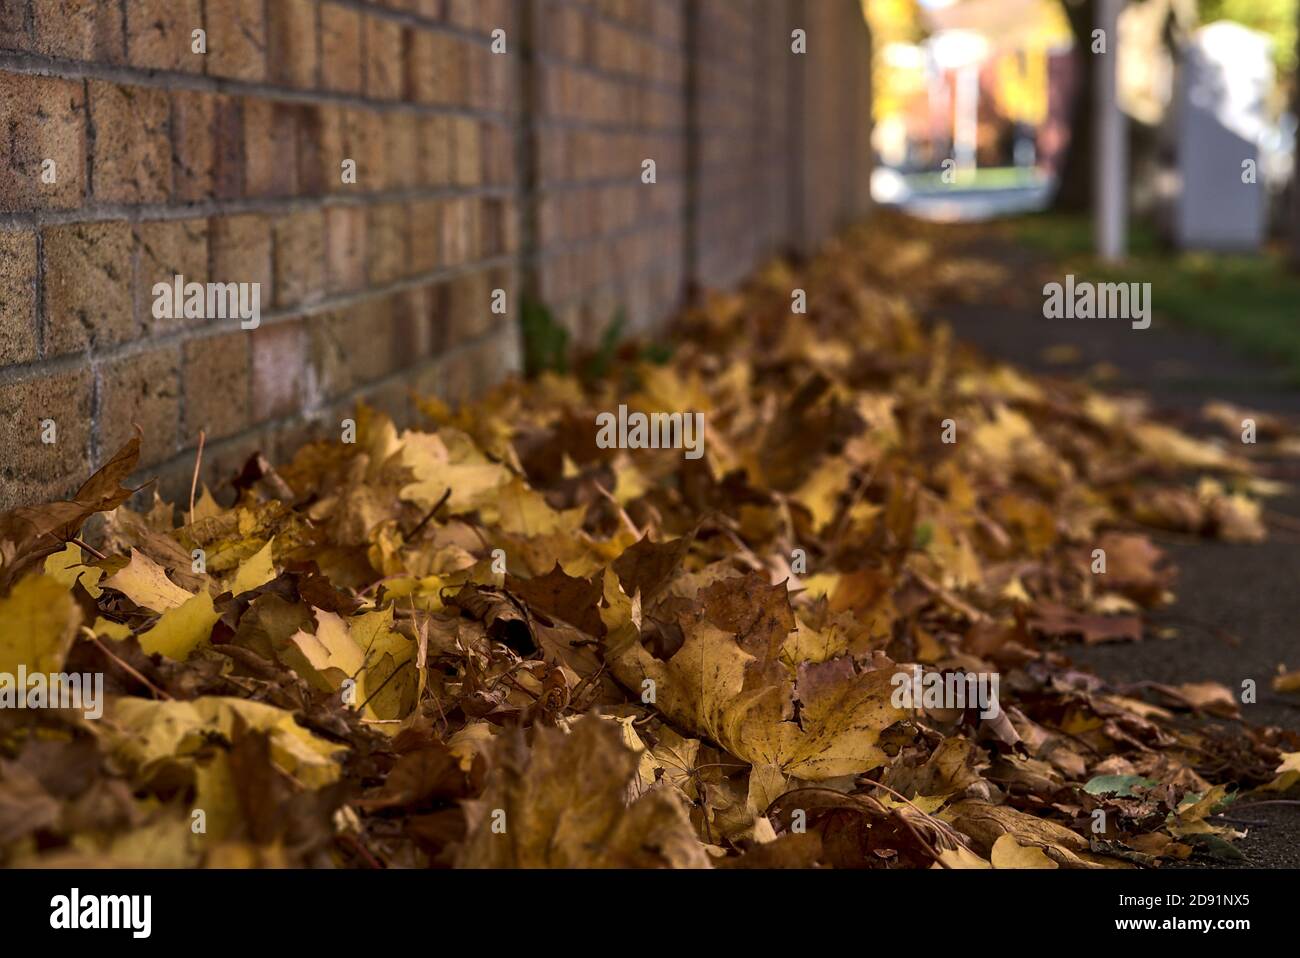 Beaucoup de feuilles brunes d'automne tombées sur le trottoir à côté du mur de briques. Mise au point sur le premier plan. De belles feuilles d'érable tombées. Copier l'espace Banque D'Images